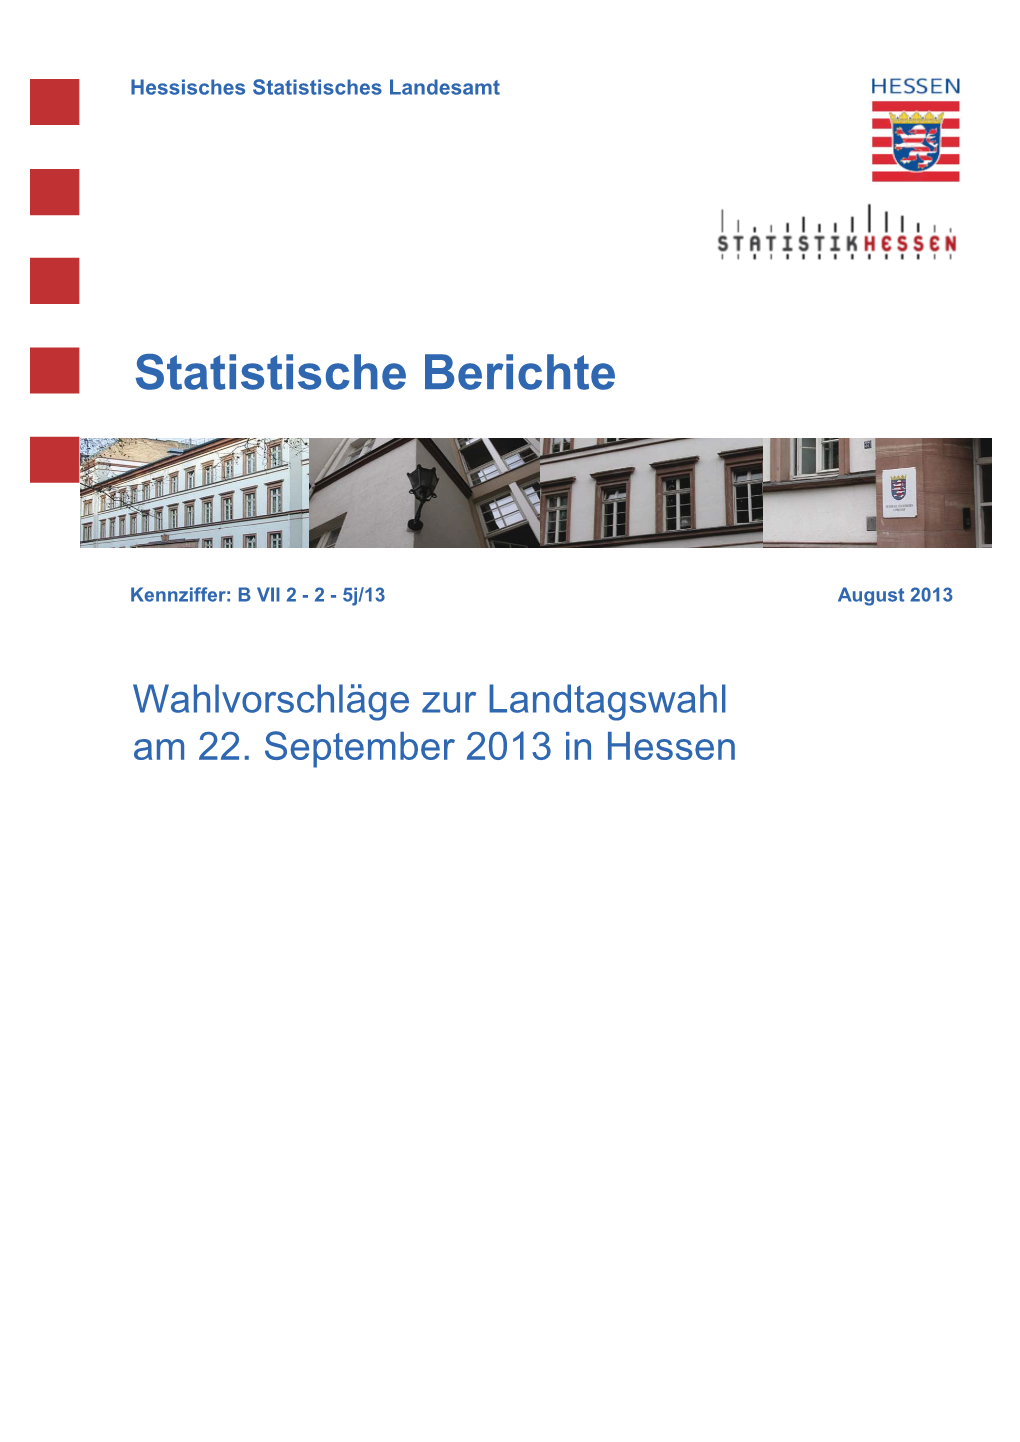 Wahlvorschläge Zur Landtagswahl Am 22. September 2013 in Hessen Hessisches Statistisches Landesamt, Wiesbaden